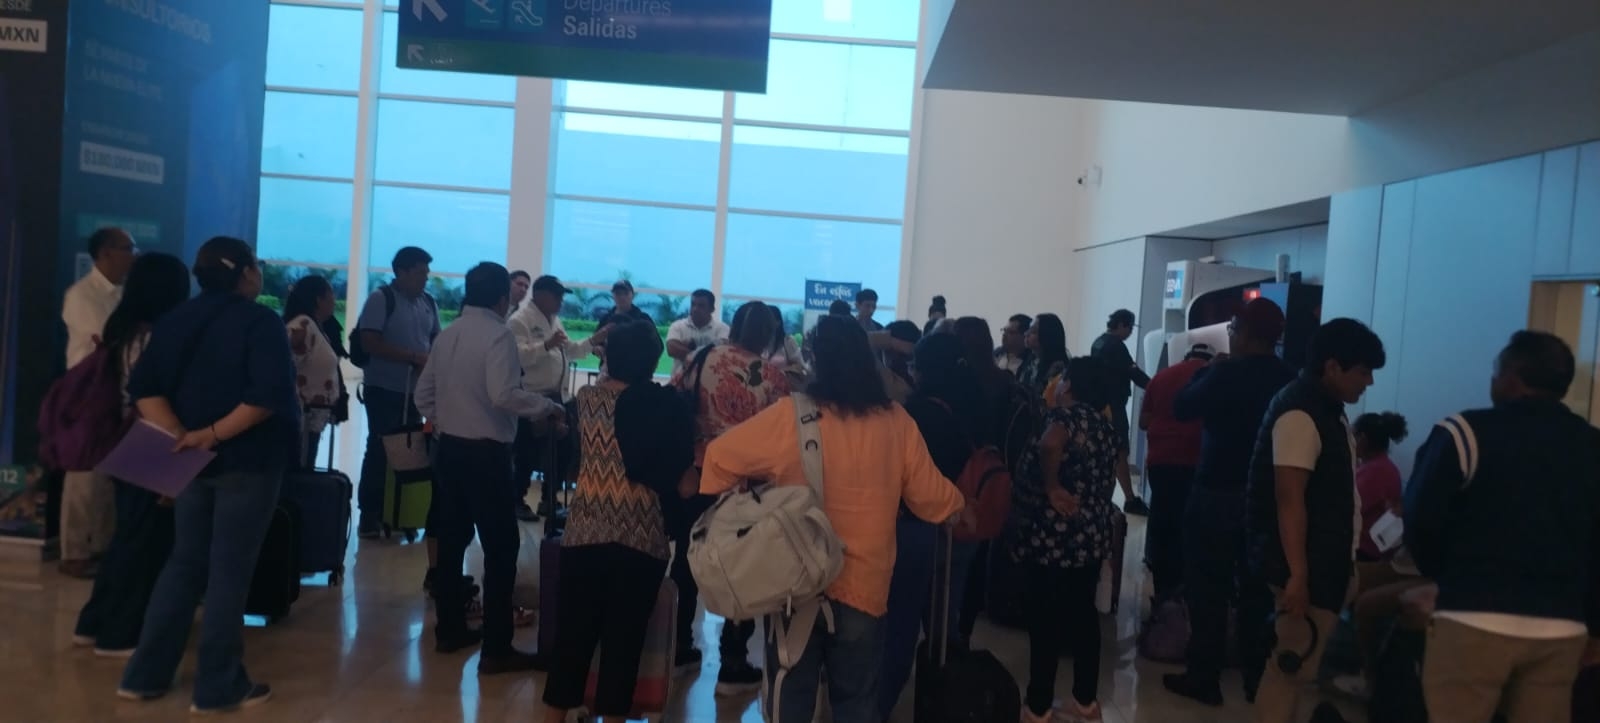 Son ocho vuelos retrasados antes del fin de semana en el aeropuerto de Mérida